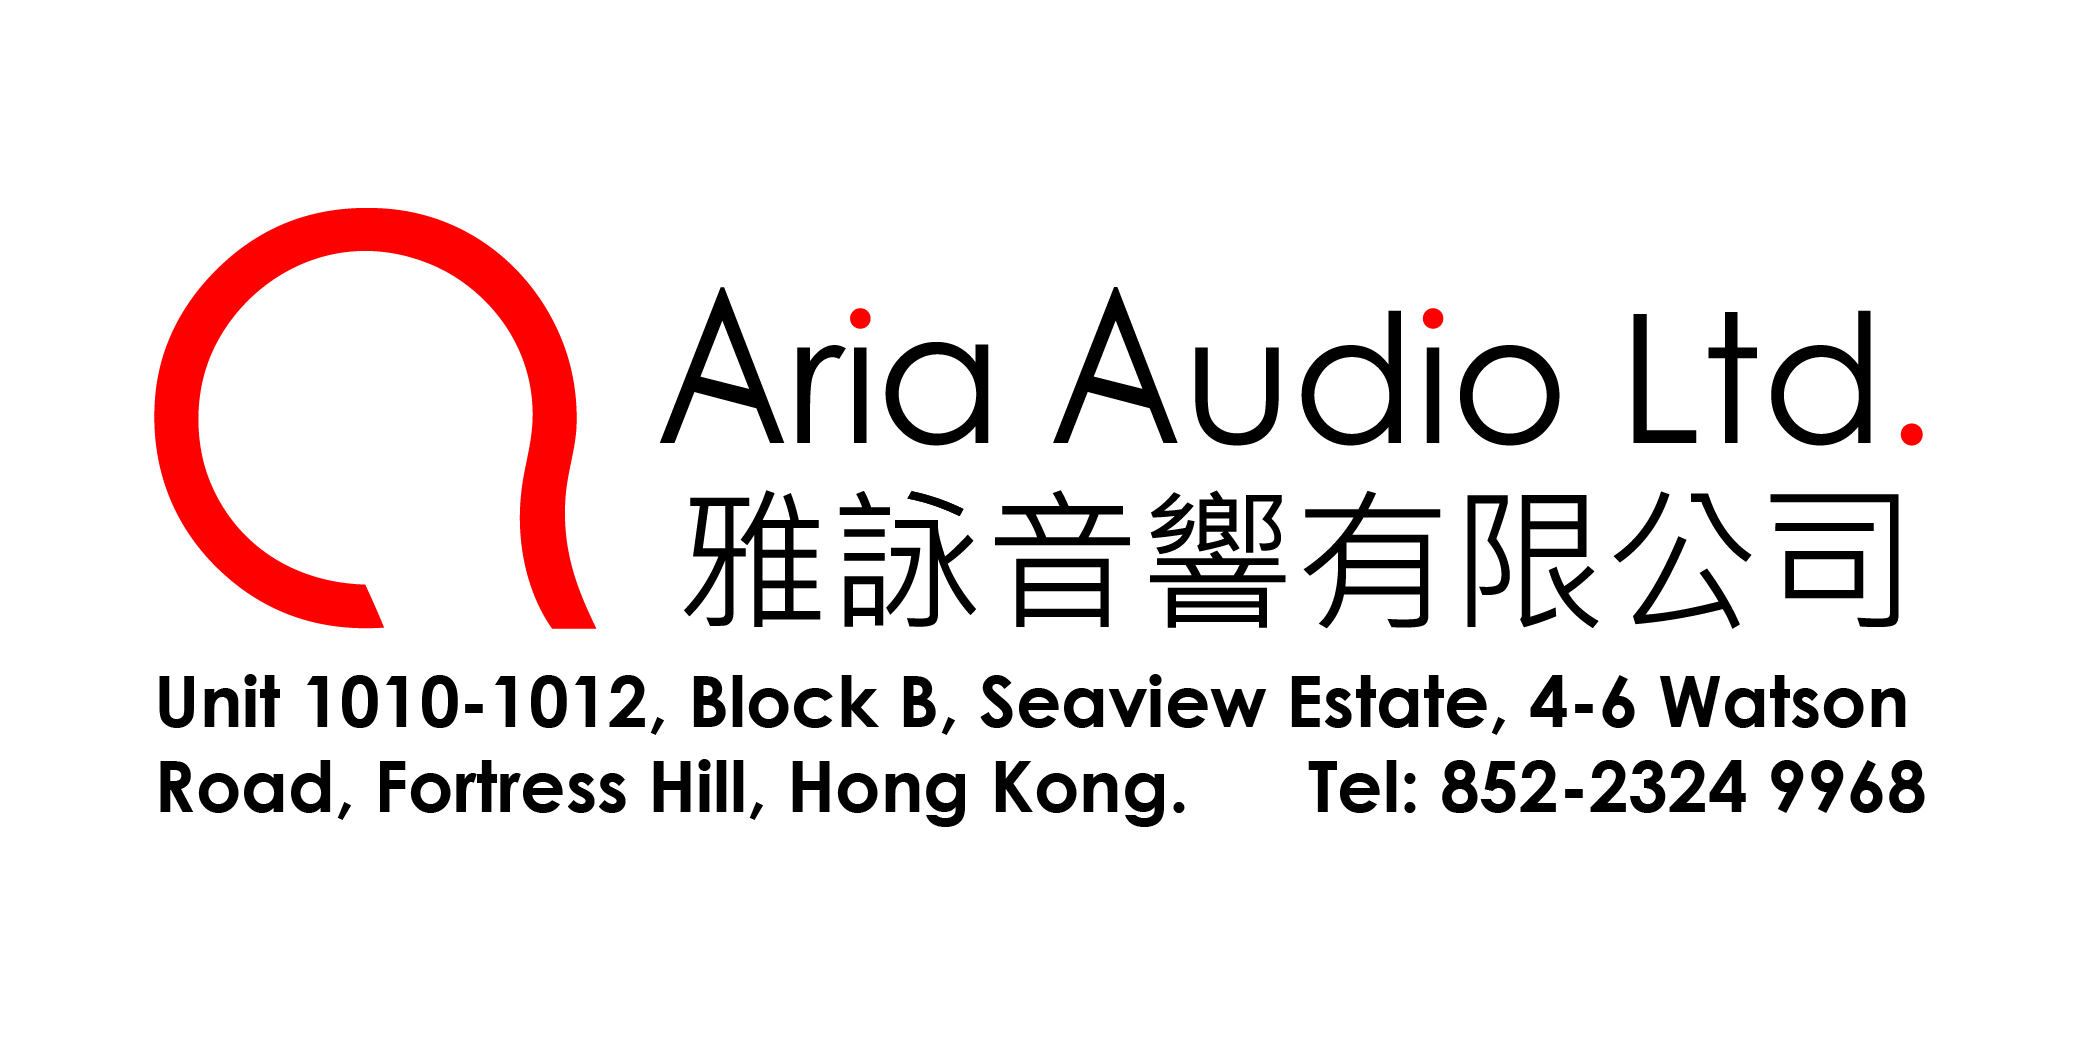 www.aria-audio.com